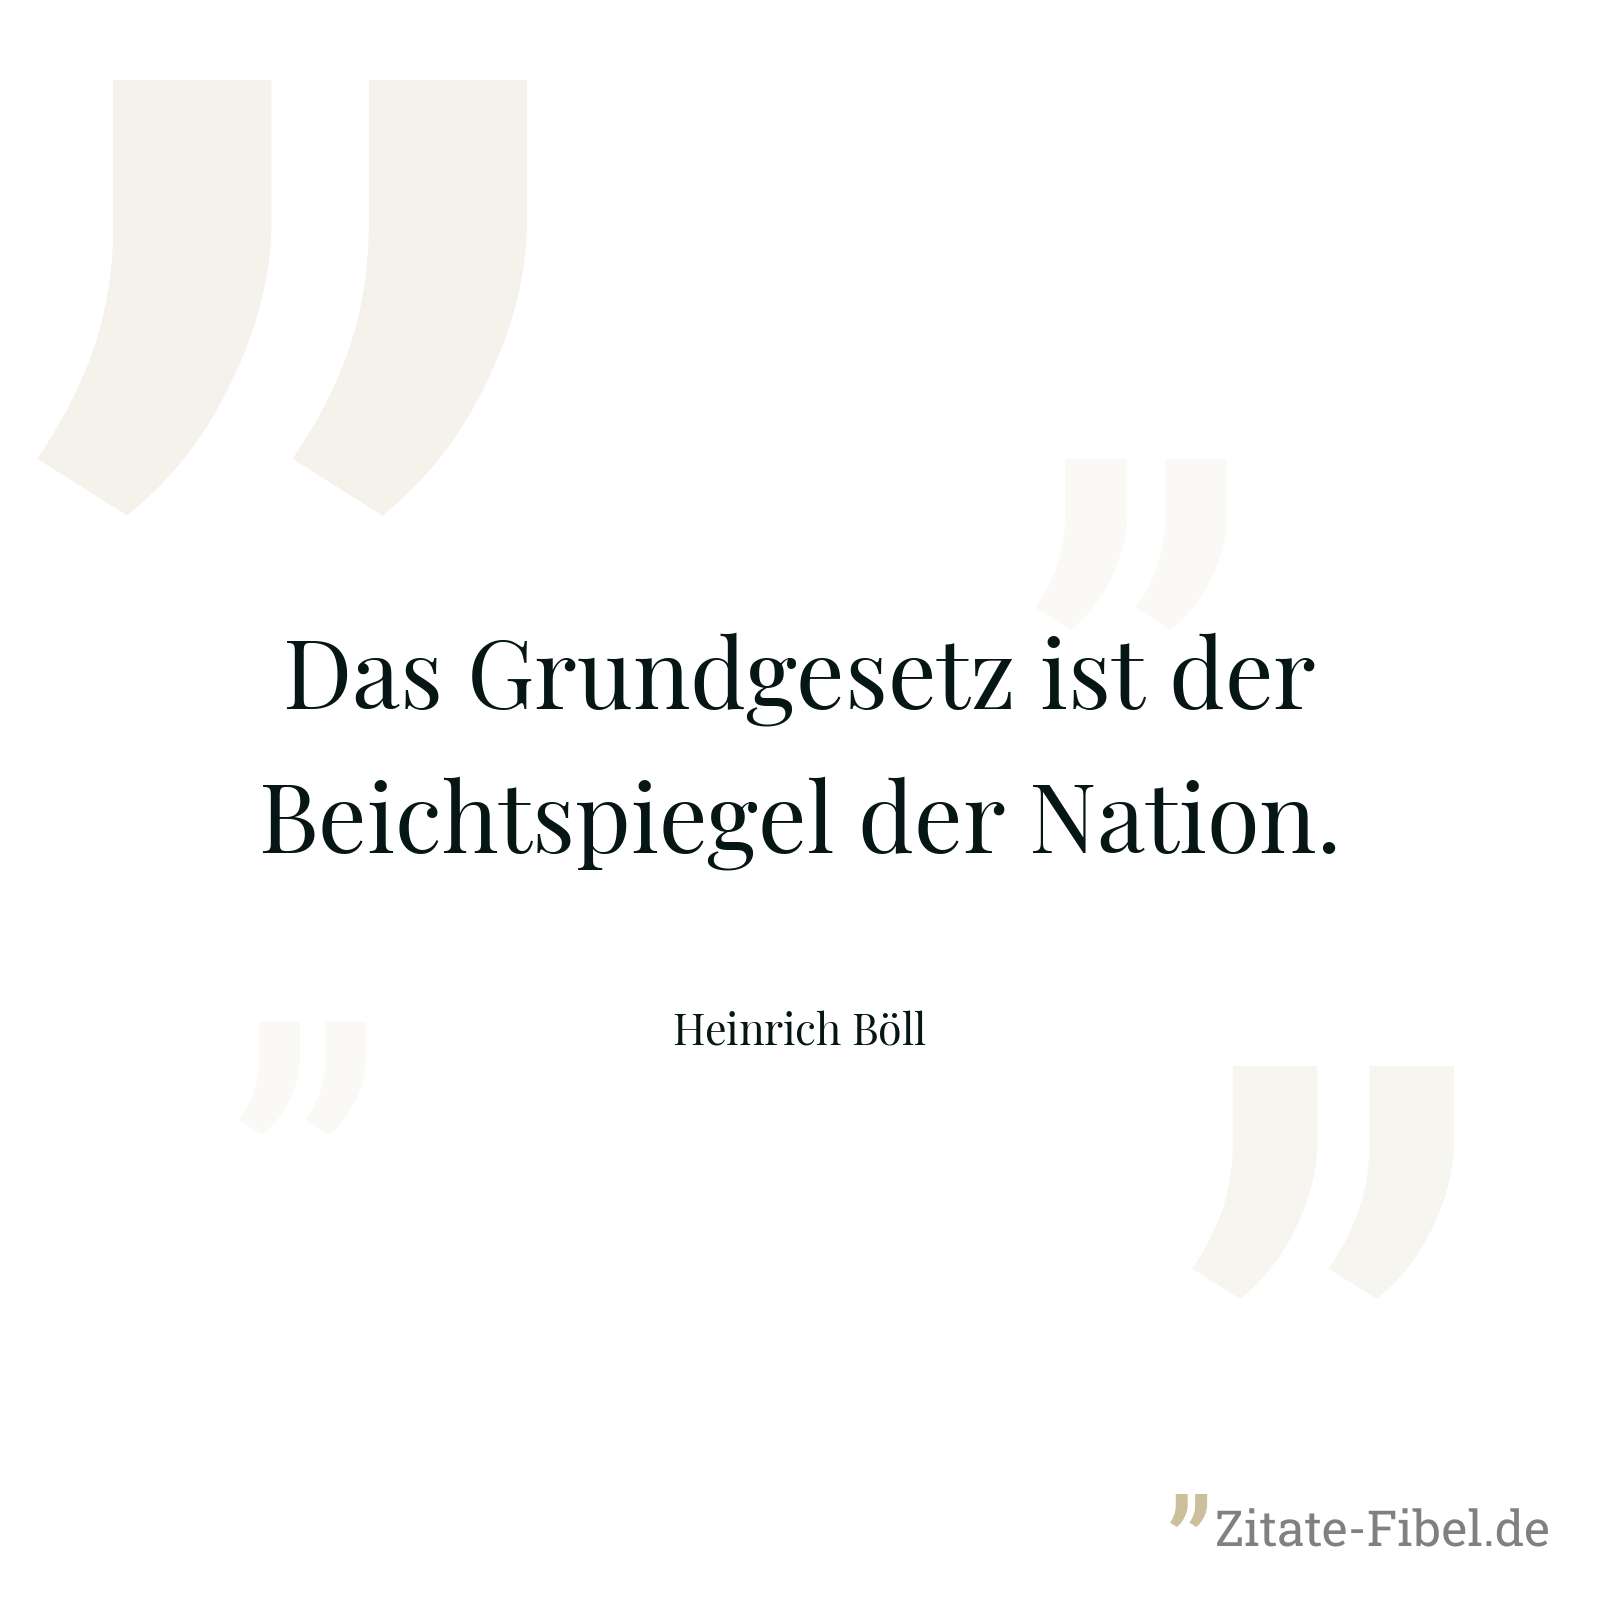 Das Grundgesetz ist der Beichtspiegel der Nation. - Heinrich Böll